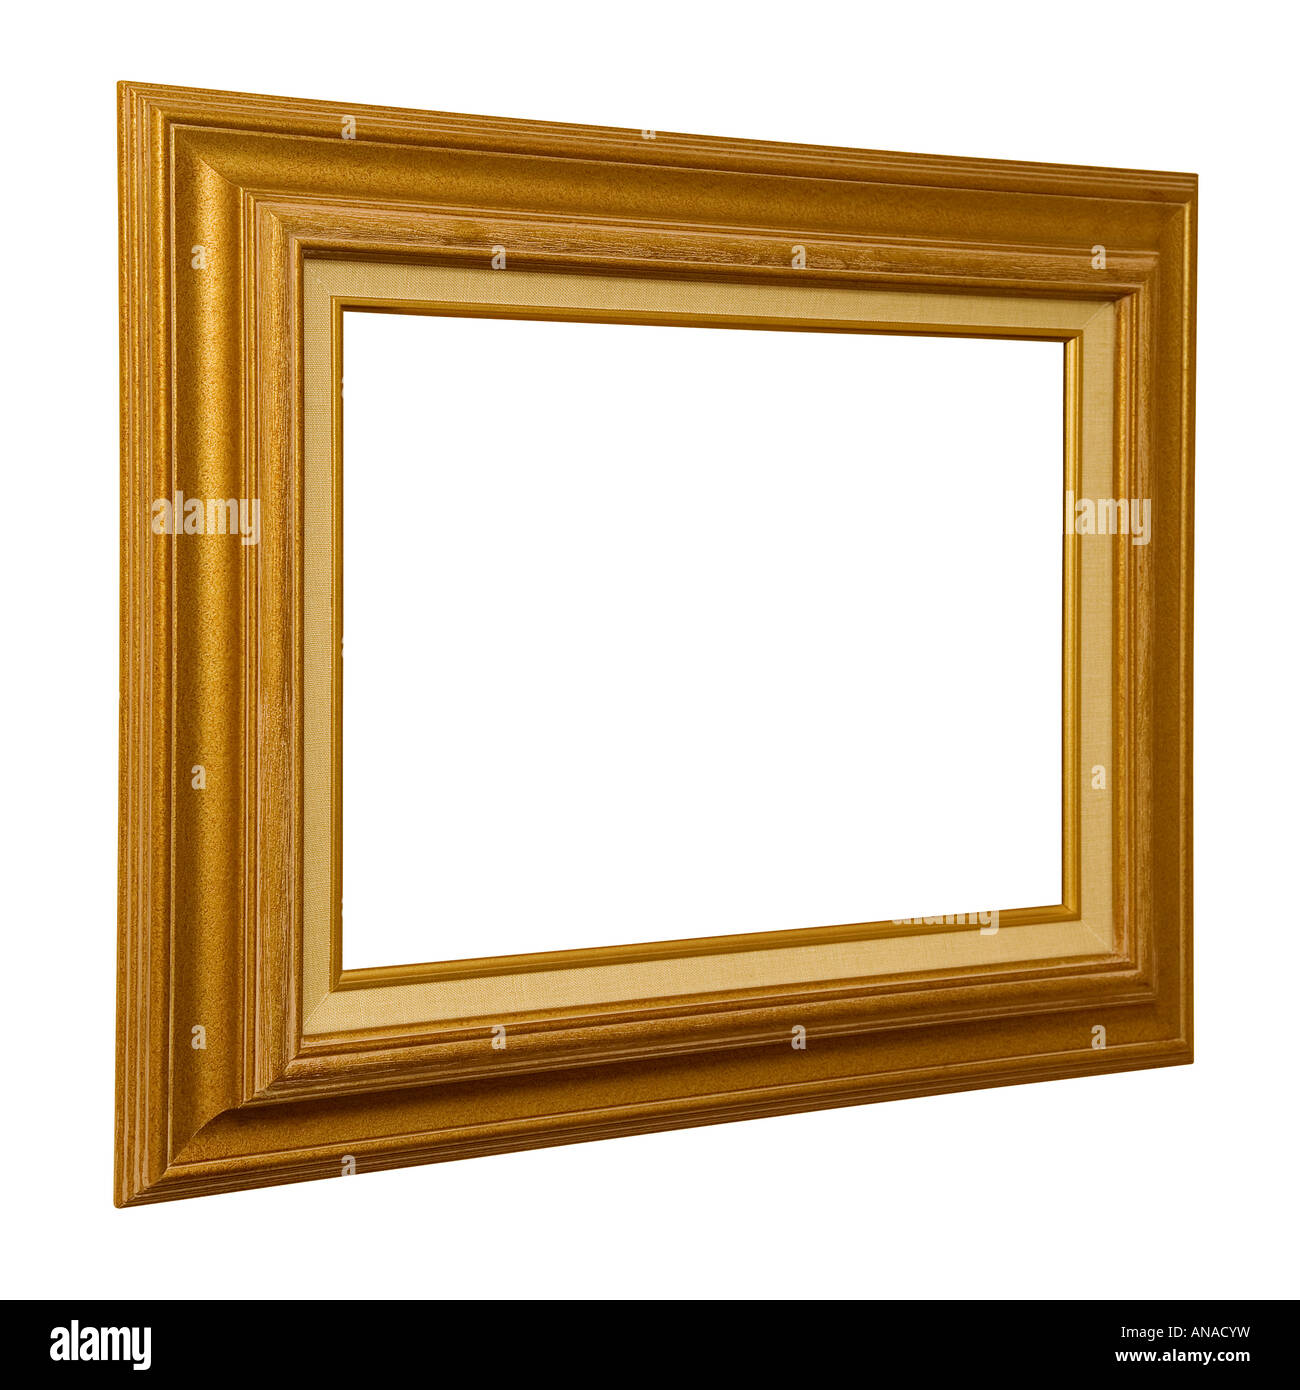 Gold farbige Bilderrahmen aus einem Winkel betrachtet Stockfotografie -  Alamy